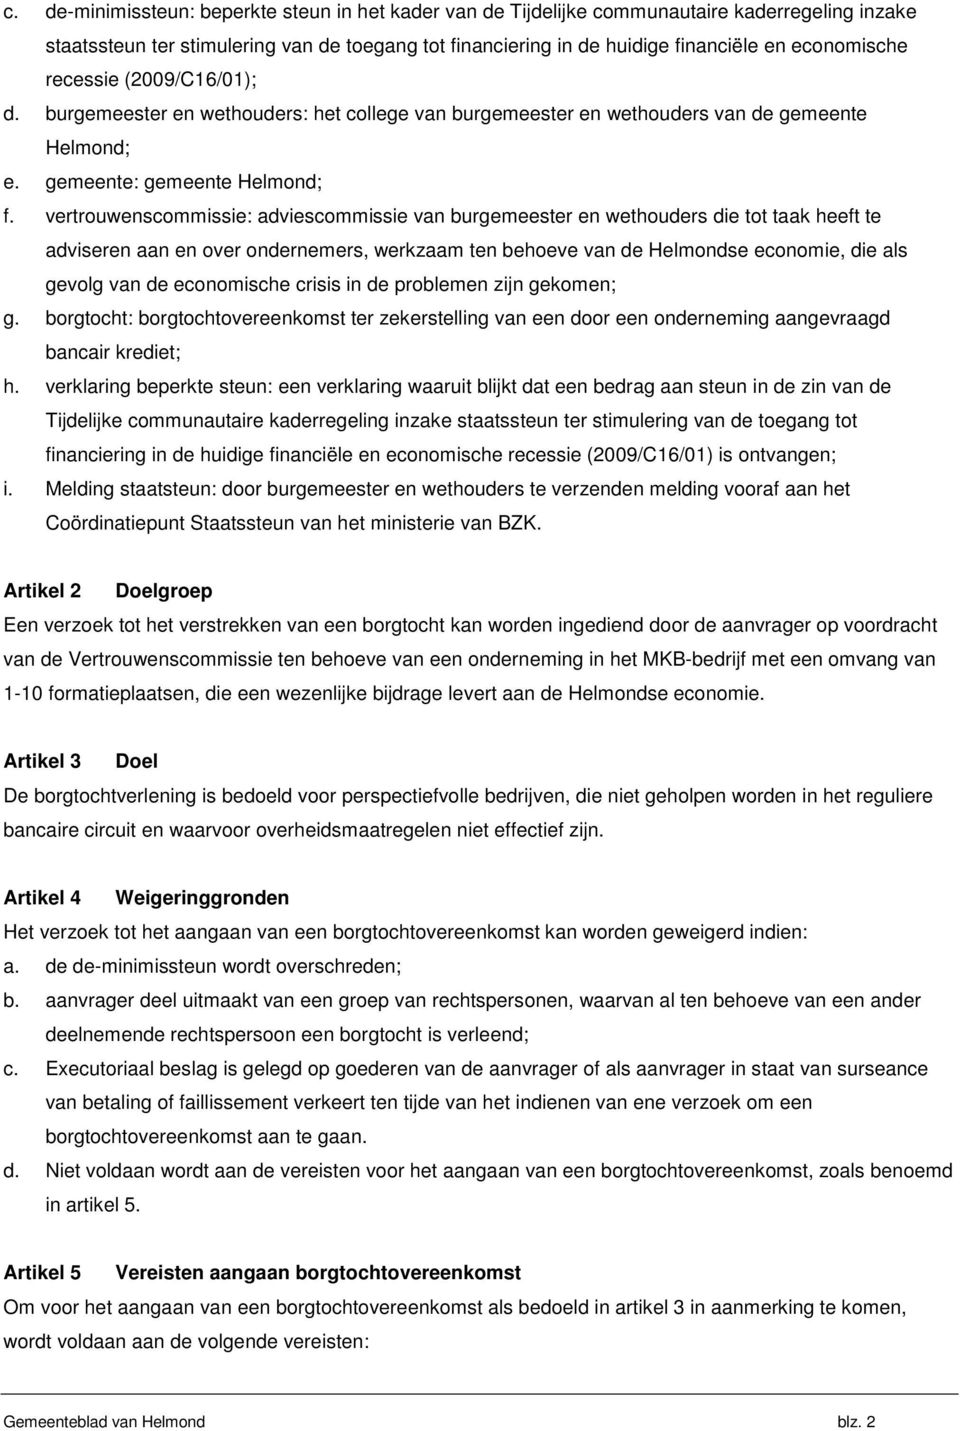 vertrouwenscommissie: adviescommissie van burgemeester en wethouders die tot taak heeft te adviseren aan en over ondernemers, werkzaam ten behoeve van de Helmondse economie, die als gevolg van de